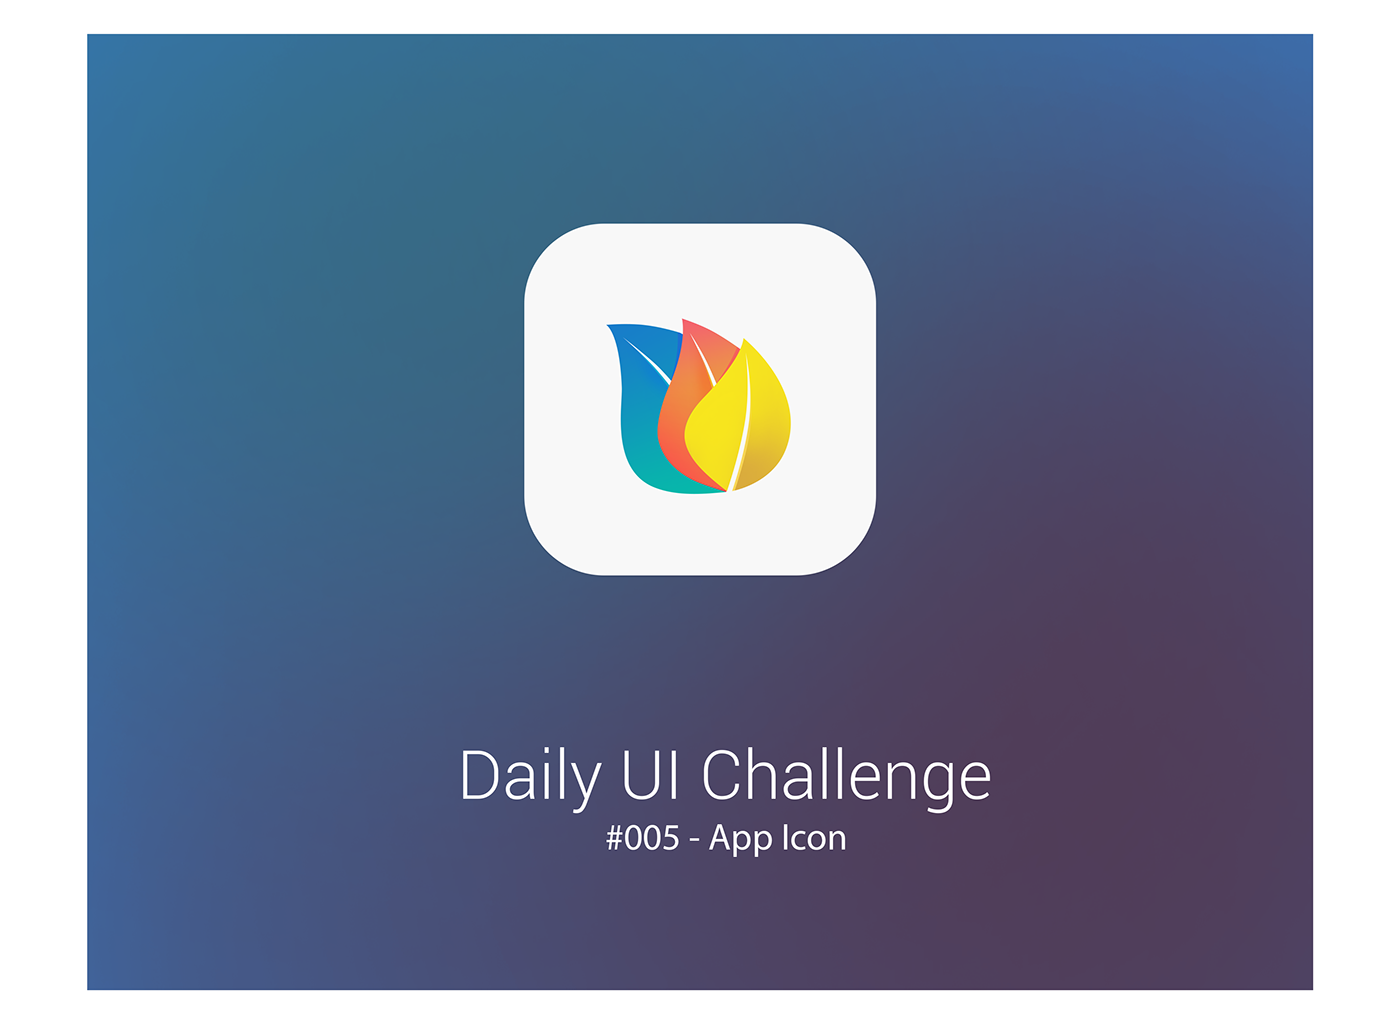 DailyUI appicon Icon